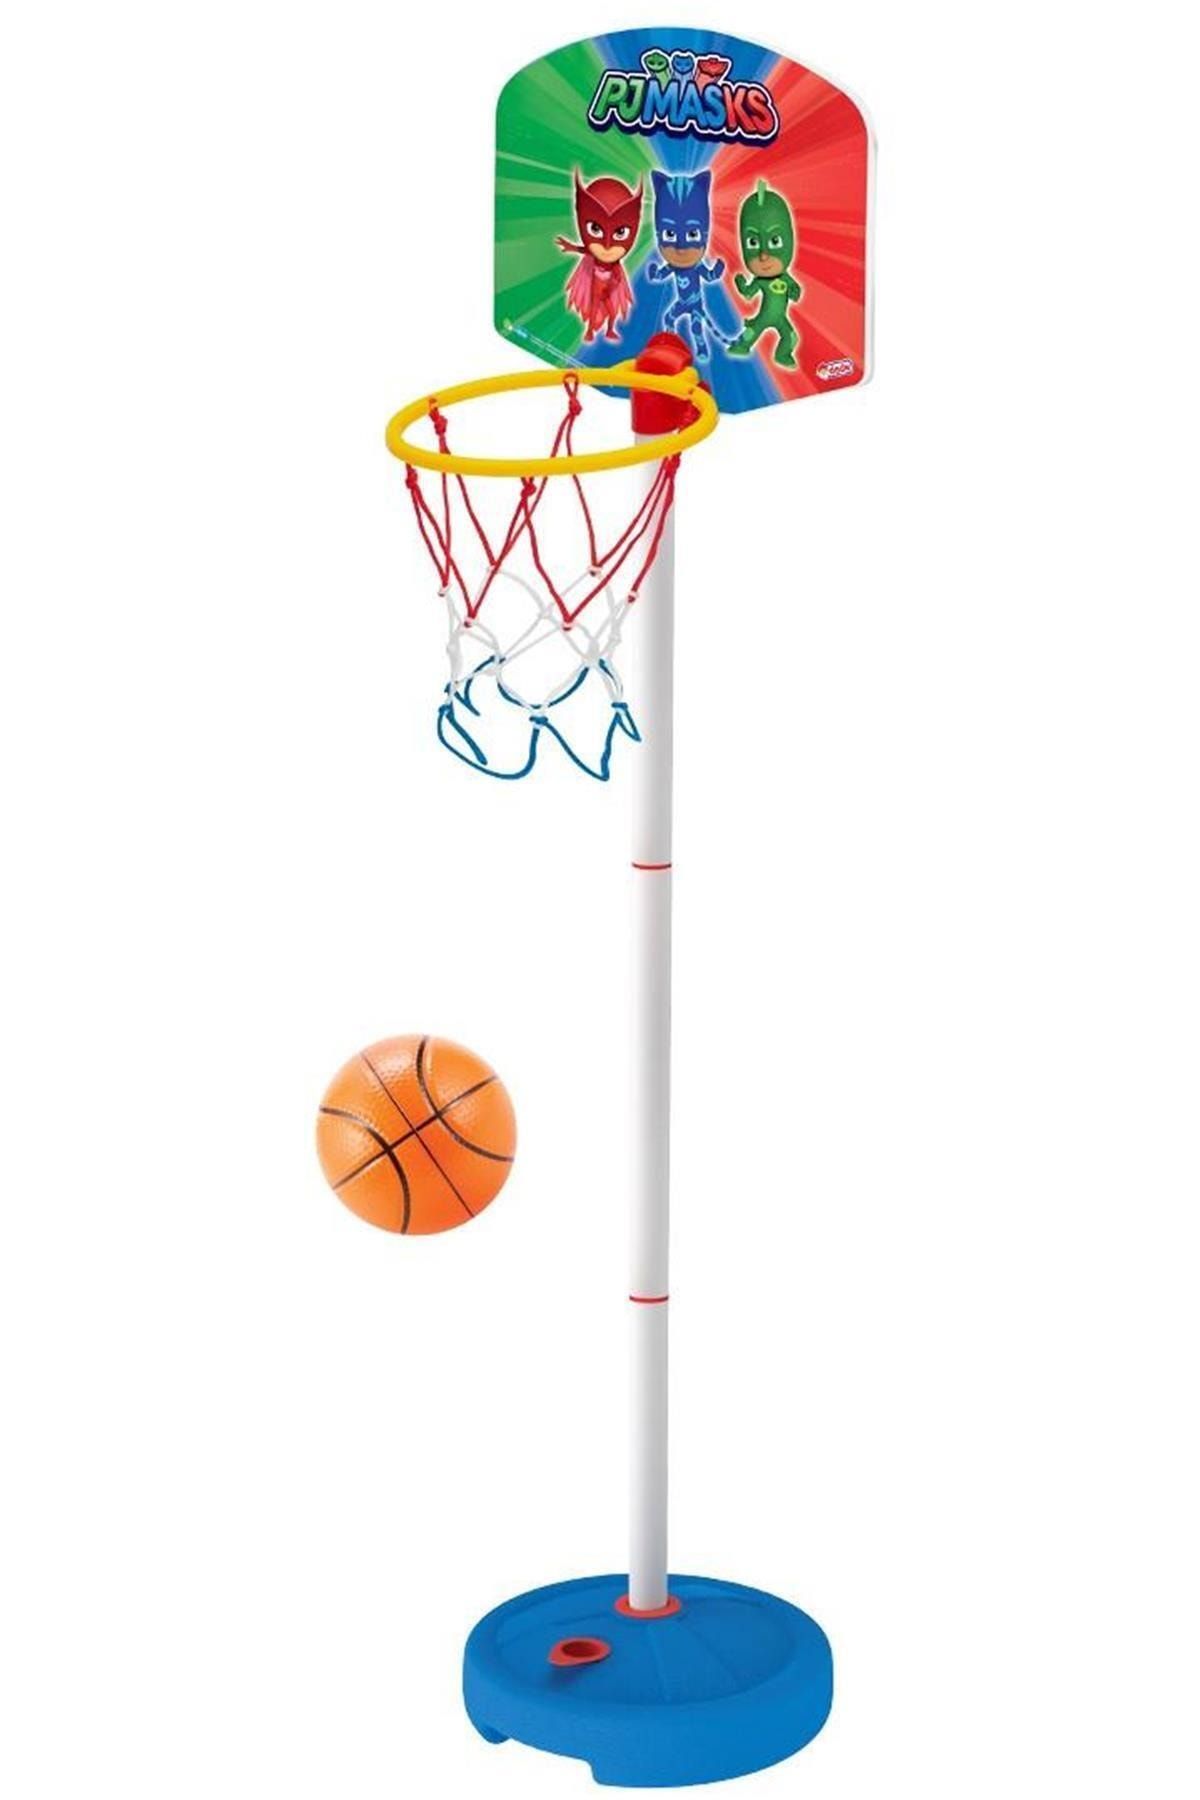 DEDE Pjmasks Küçük Ayaklı Basketbol Potası